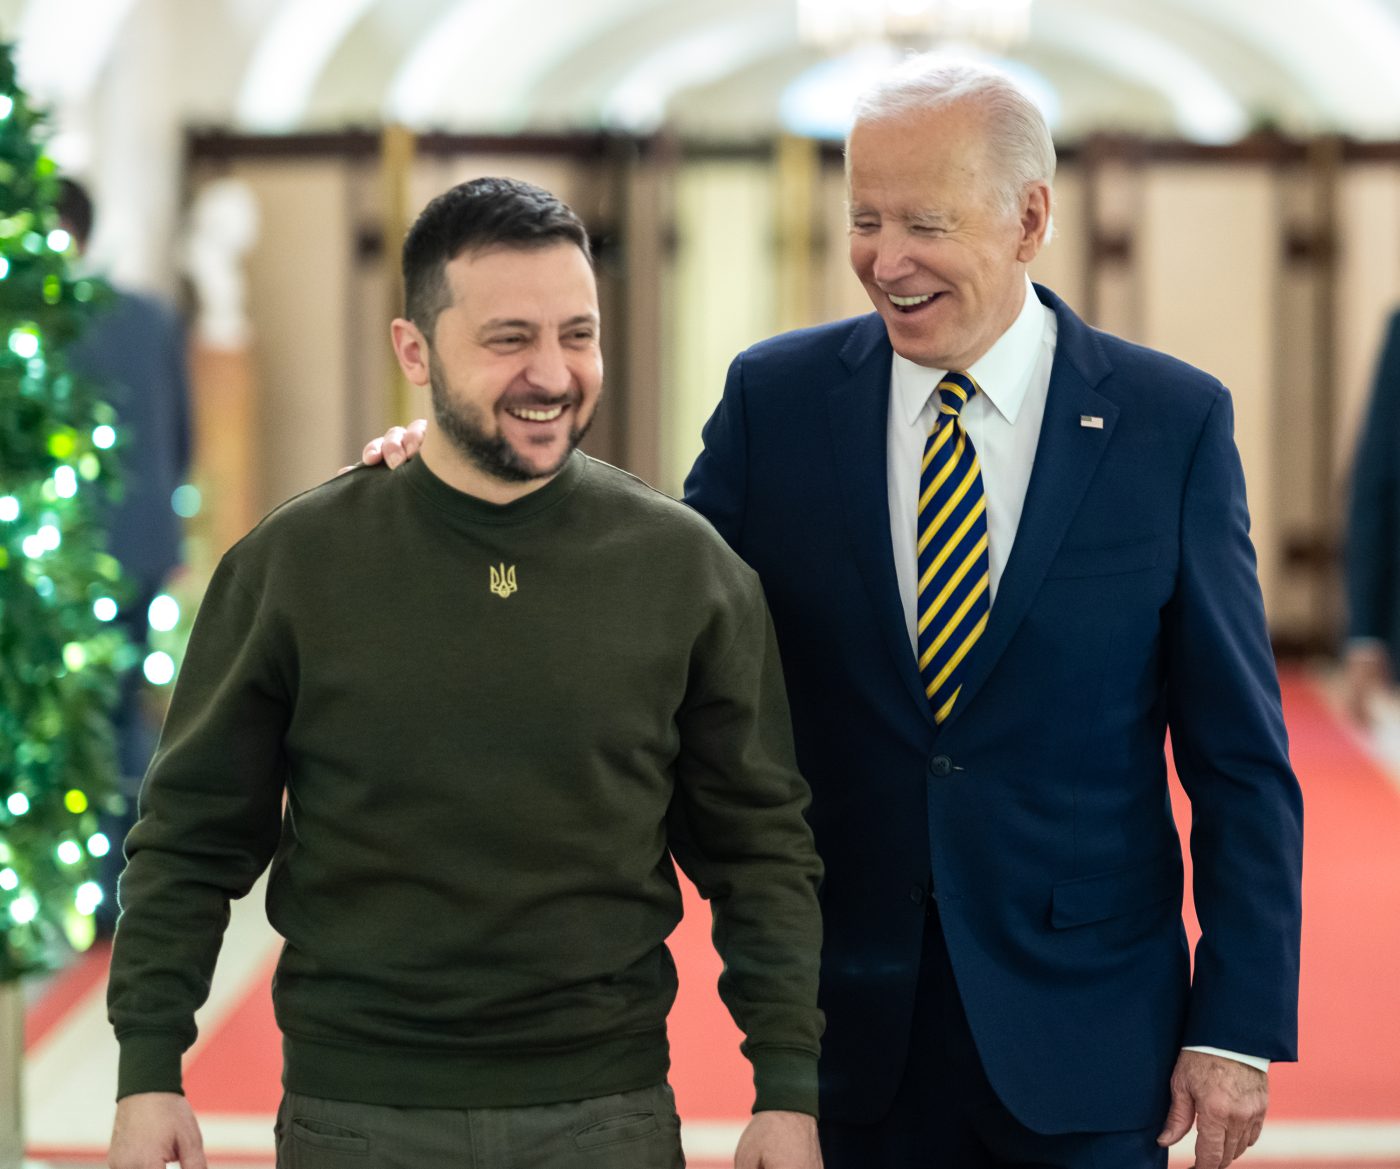 Photo: President of Ukraine Volodymyr Zelenskyy and US President Joe Biden in the White House. Credit: @POTUS via Twitter https://twitter.com/POTUS/status/1605667817558261761/photo/1